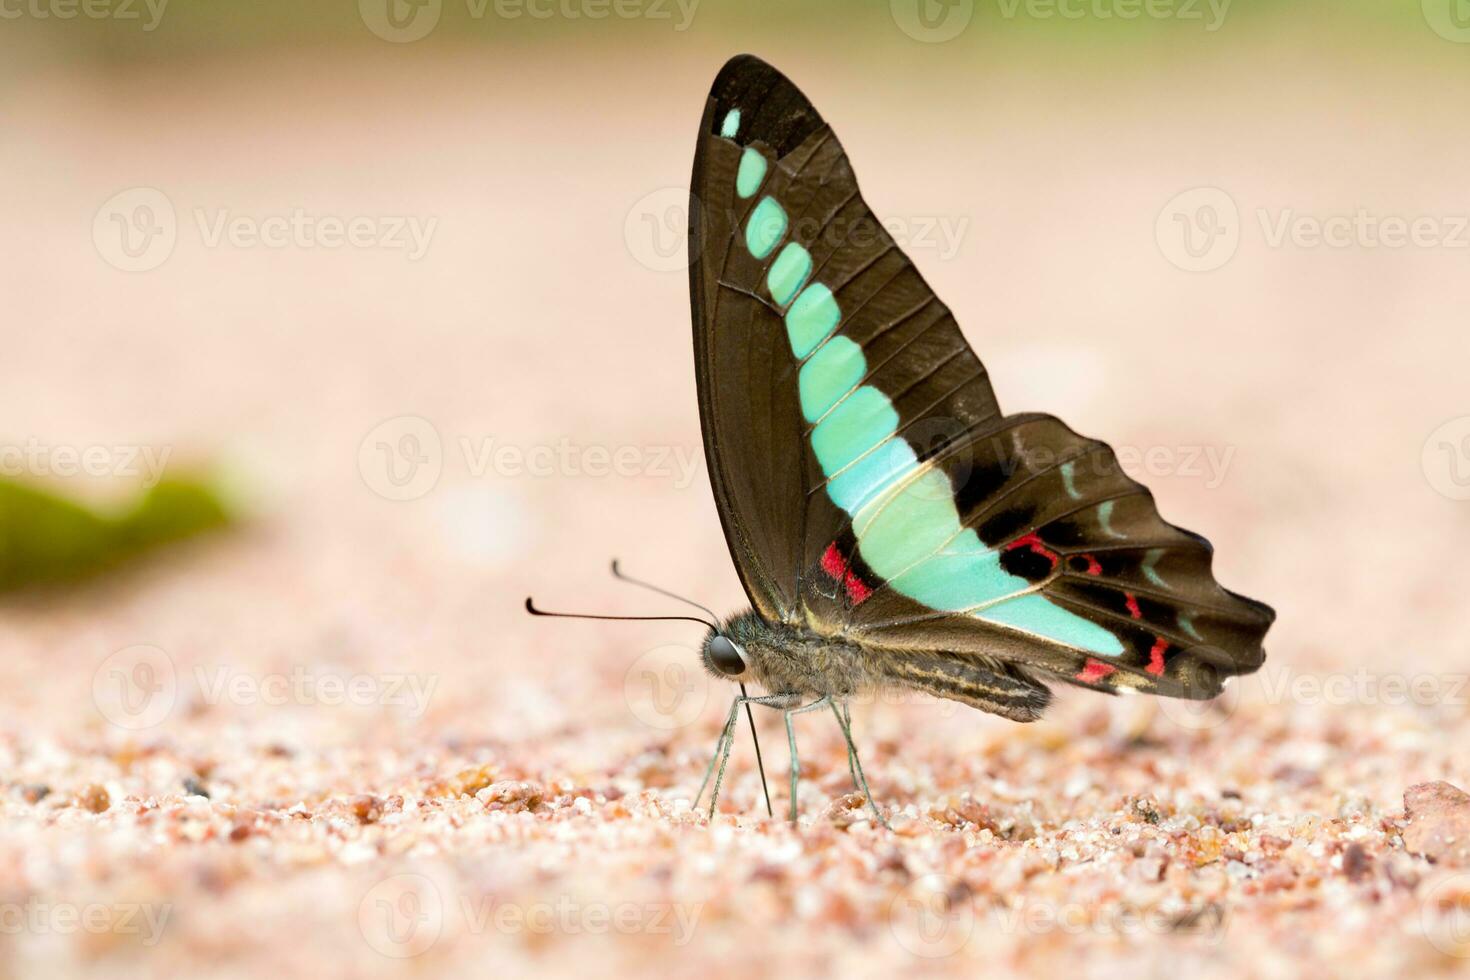 geai commun papillon mangé minéral sur sable photo